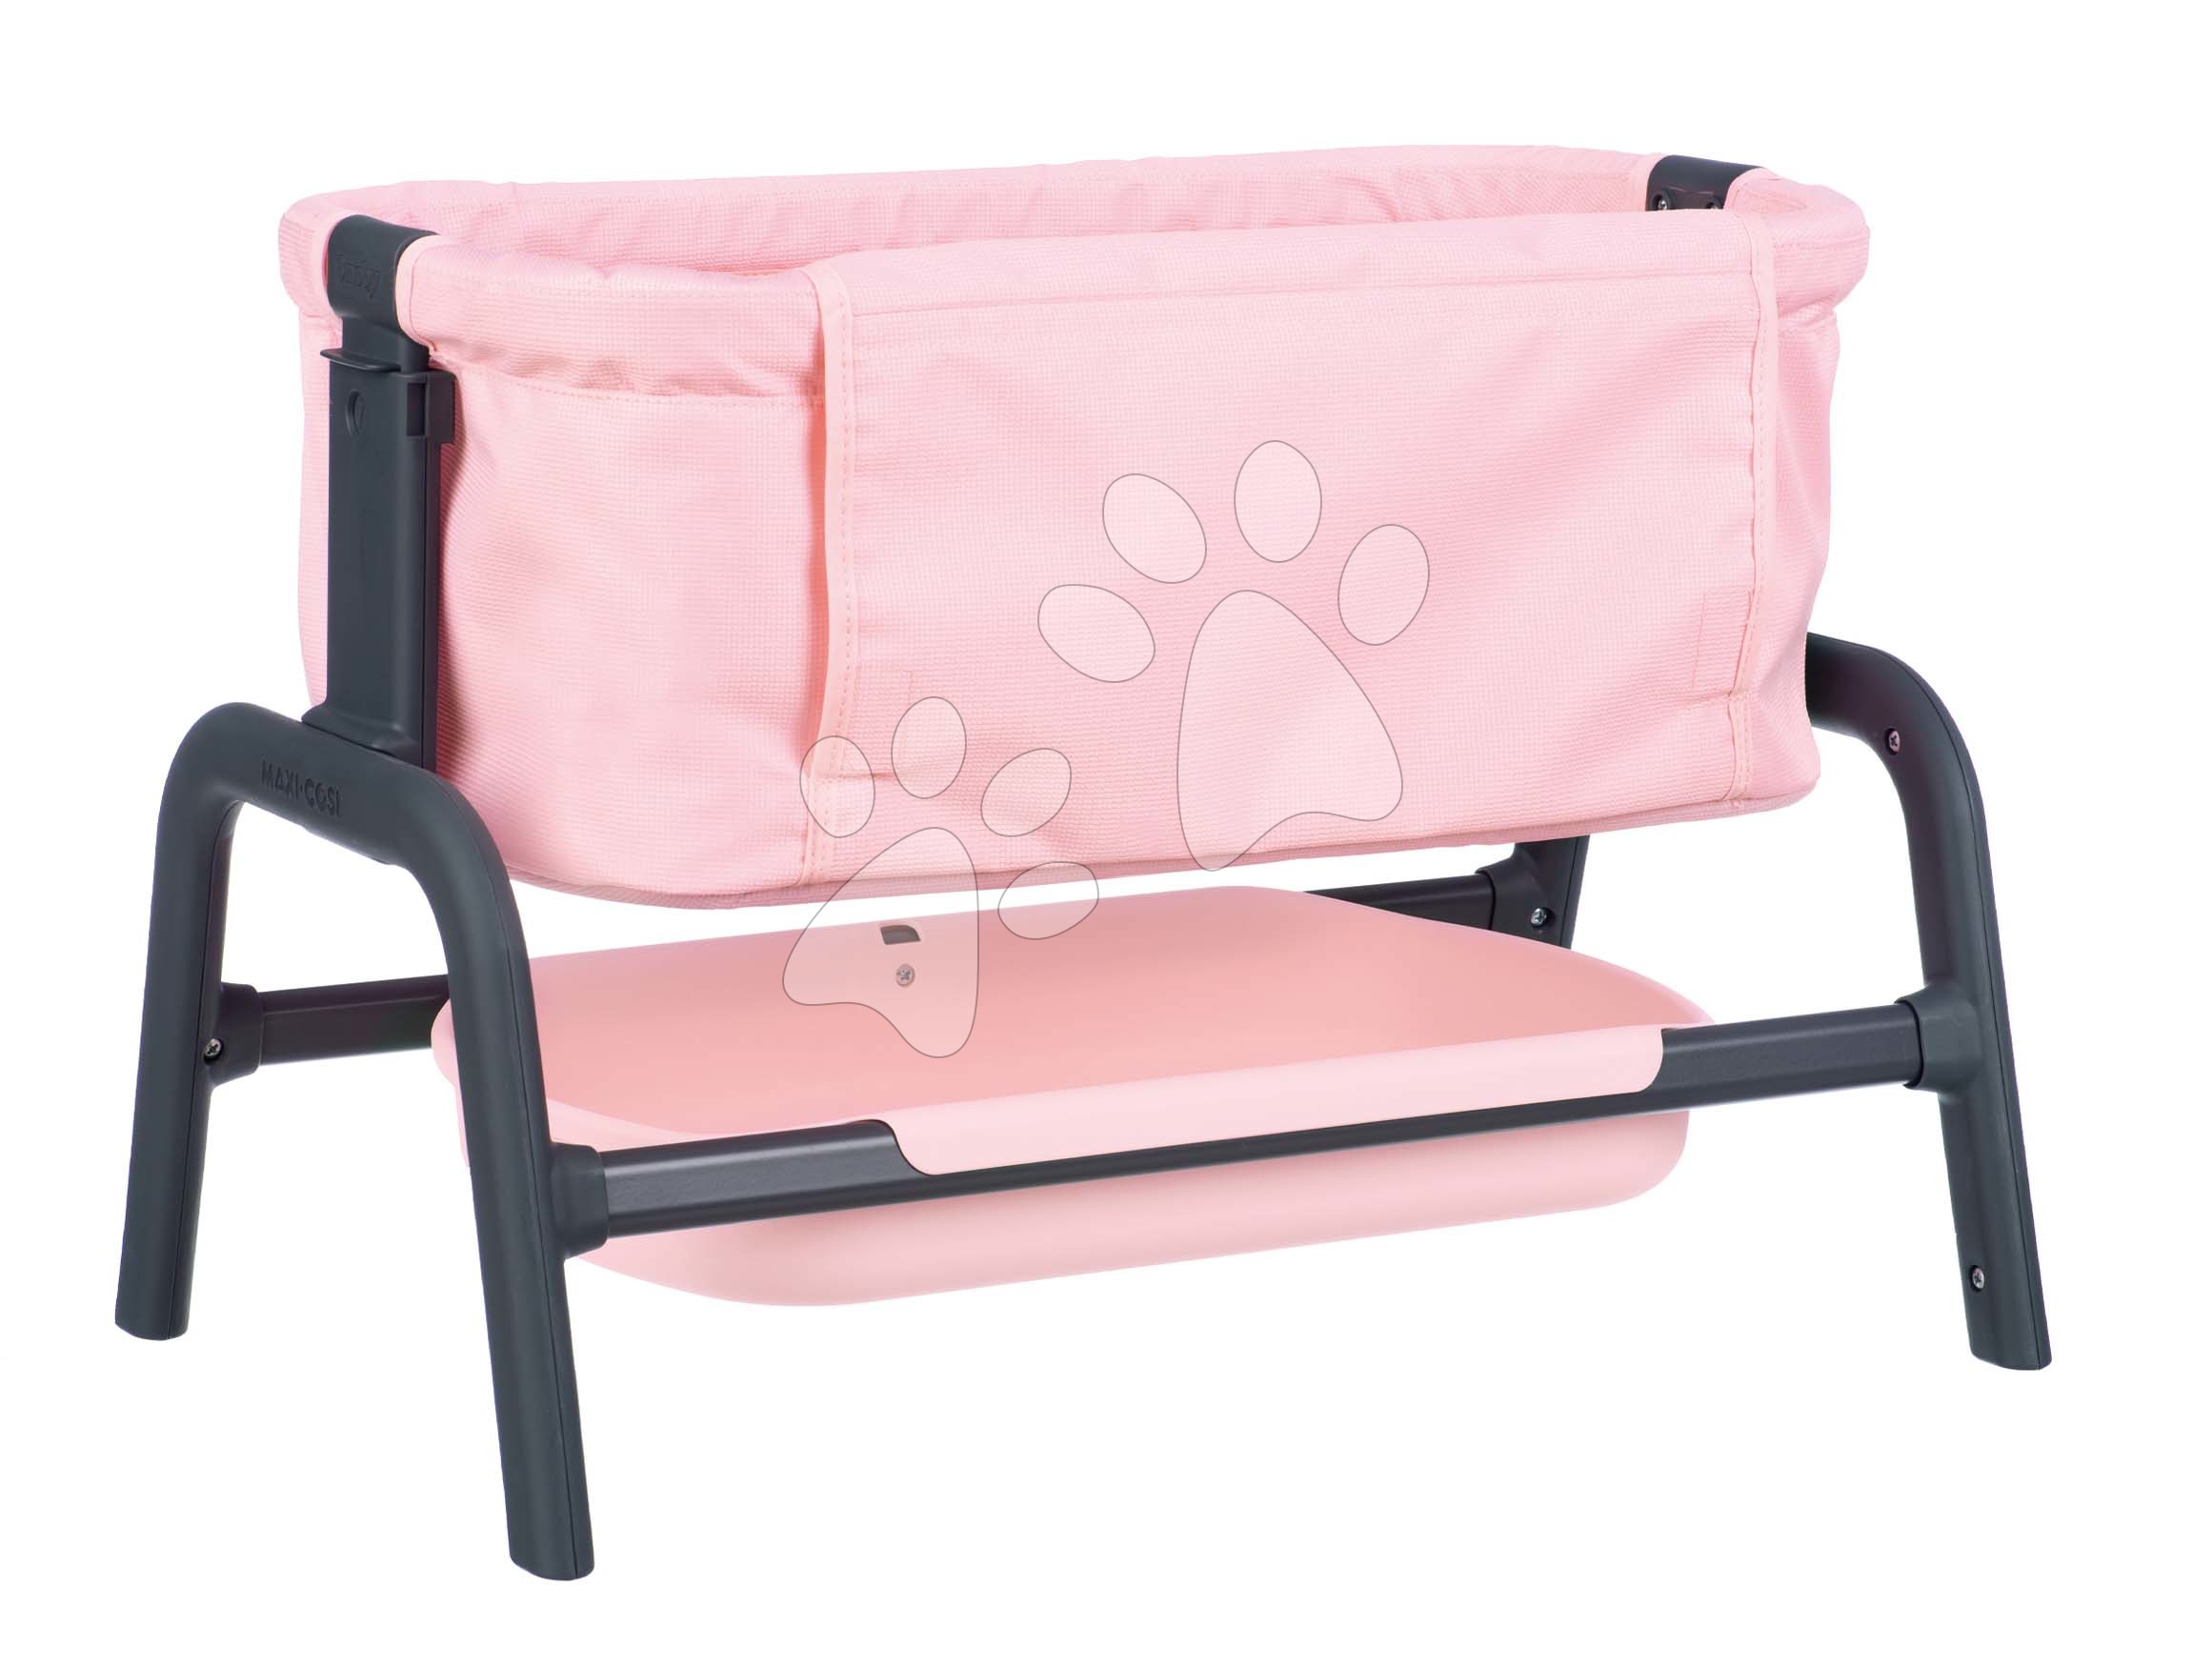 Postieľky a kolísky pre bábiky - Postieľka Powder Pink Maxi-Cosi&Quinny Co Sleeping Bed Smoby pre 38 cm bábiku 4 výškové pozície